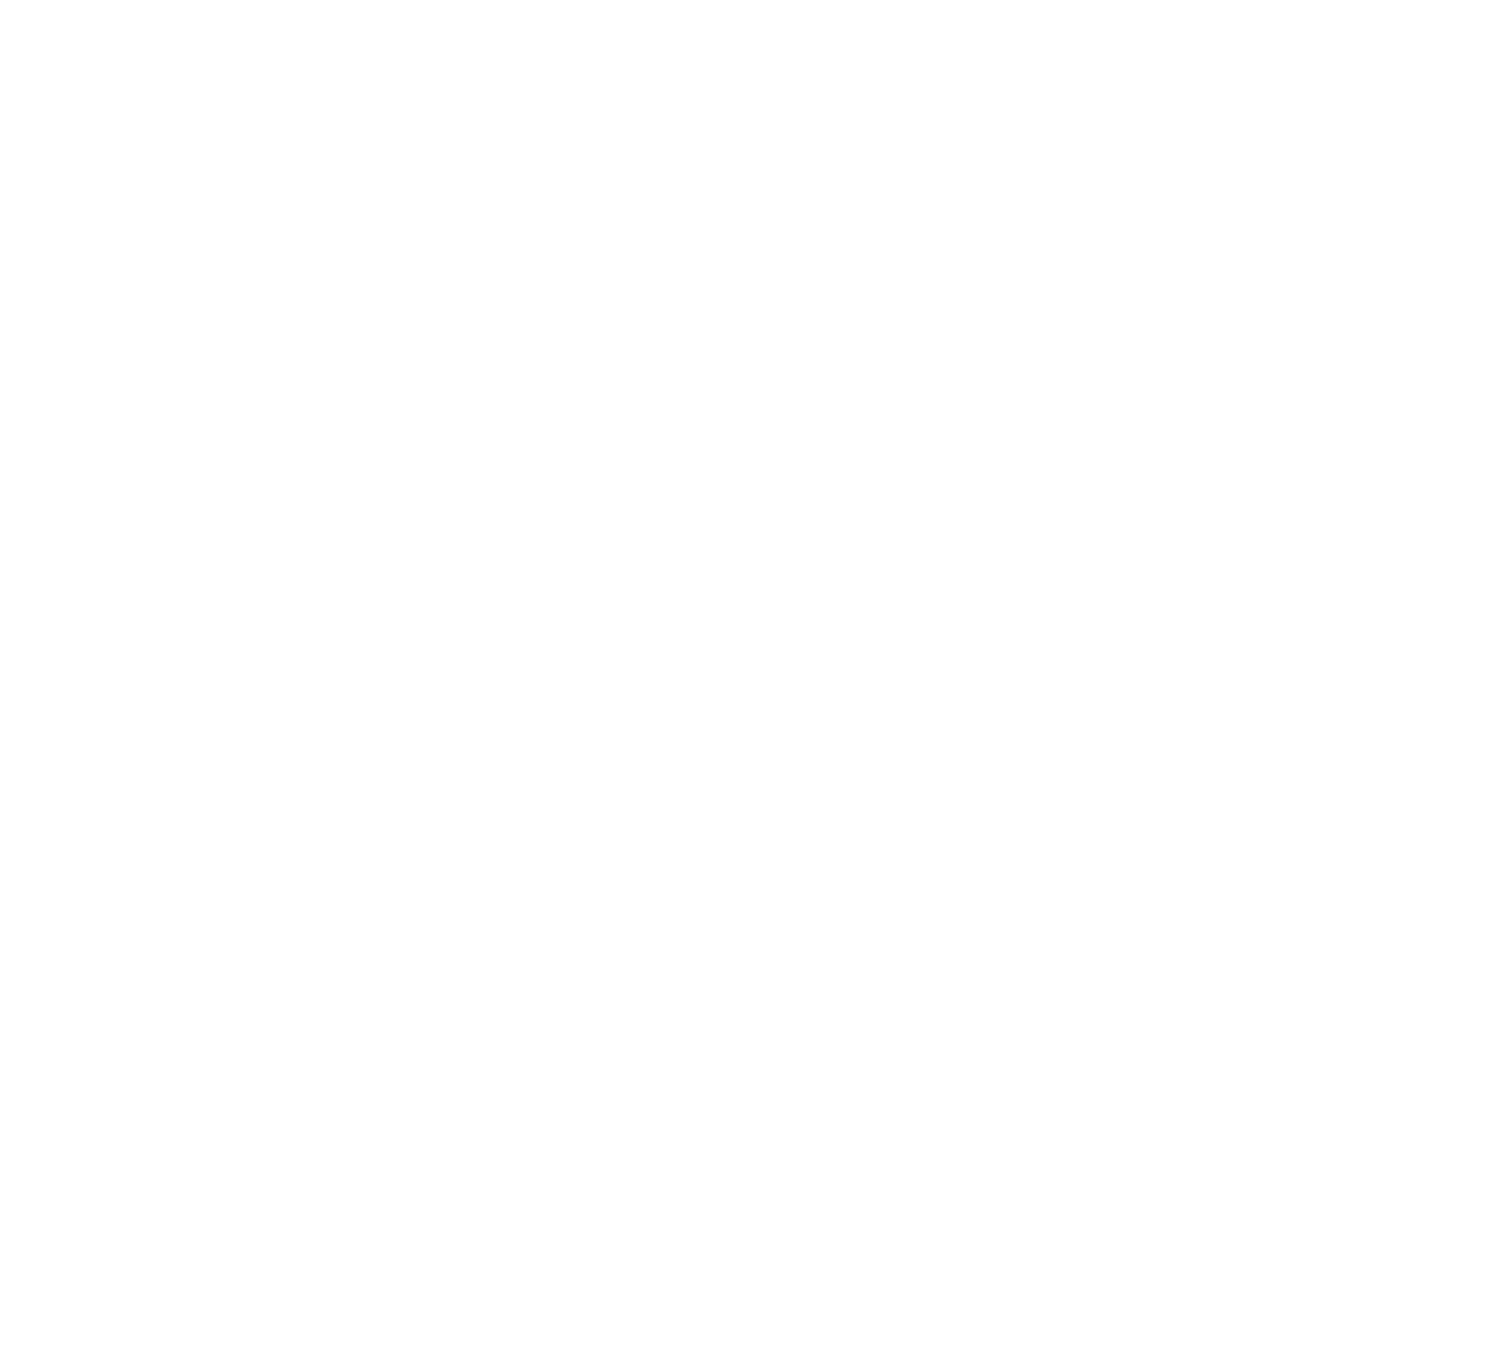 Linamar logo for dark backgrounds (transparent PNG)